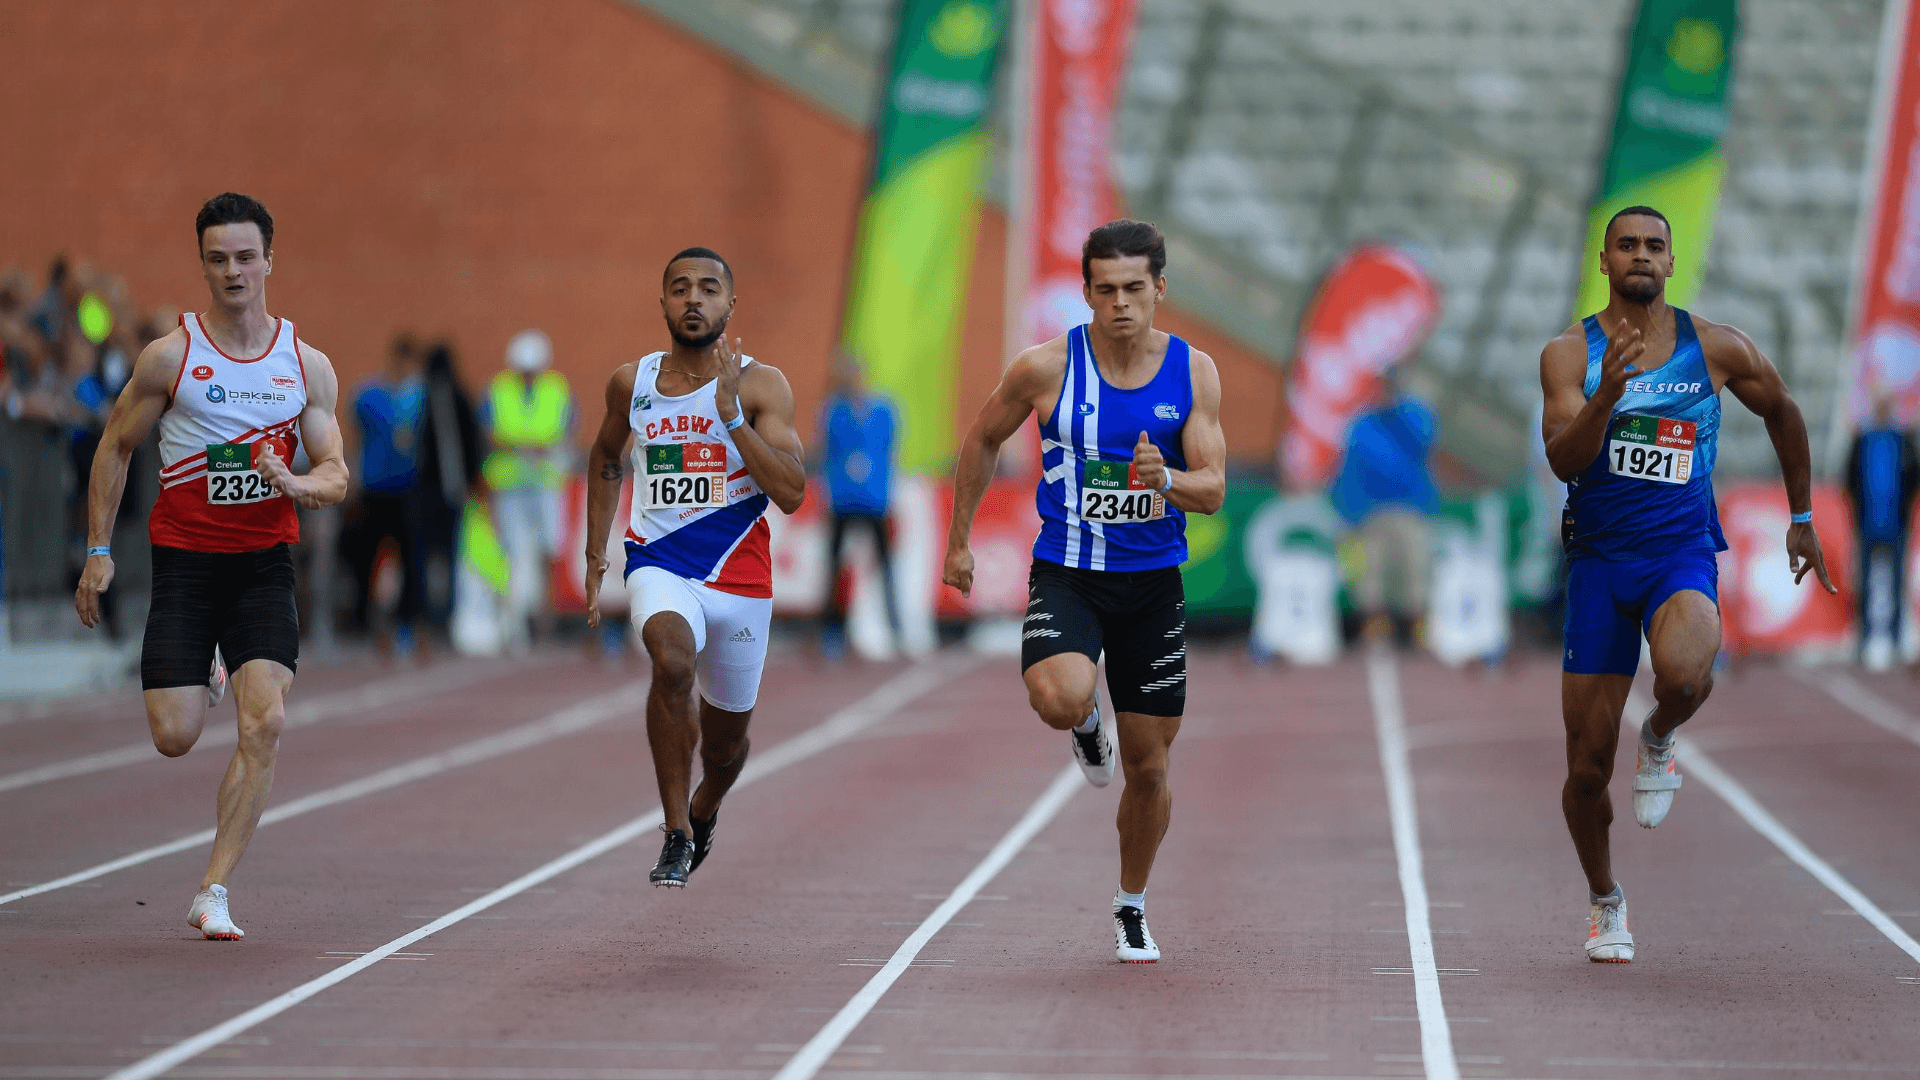 finale-100m-2019-brussel-bk-ac-dequick-luc